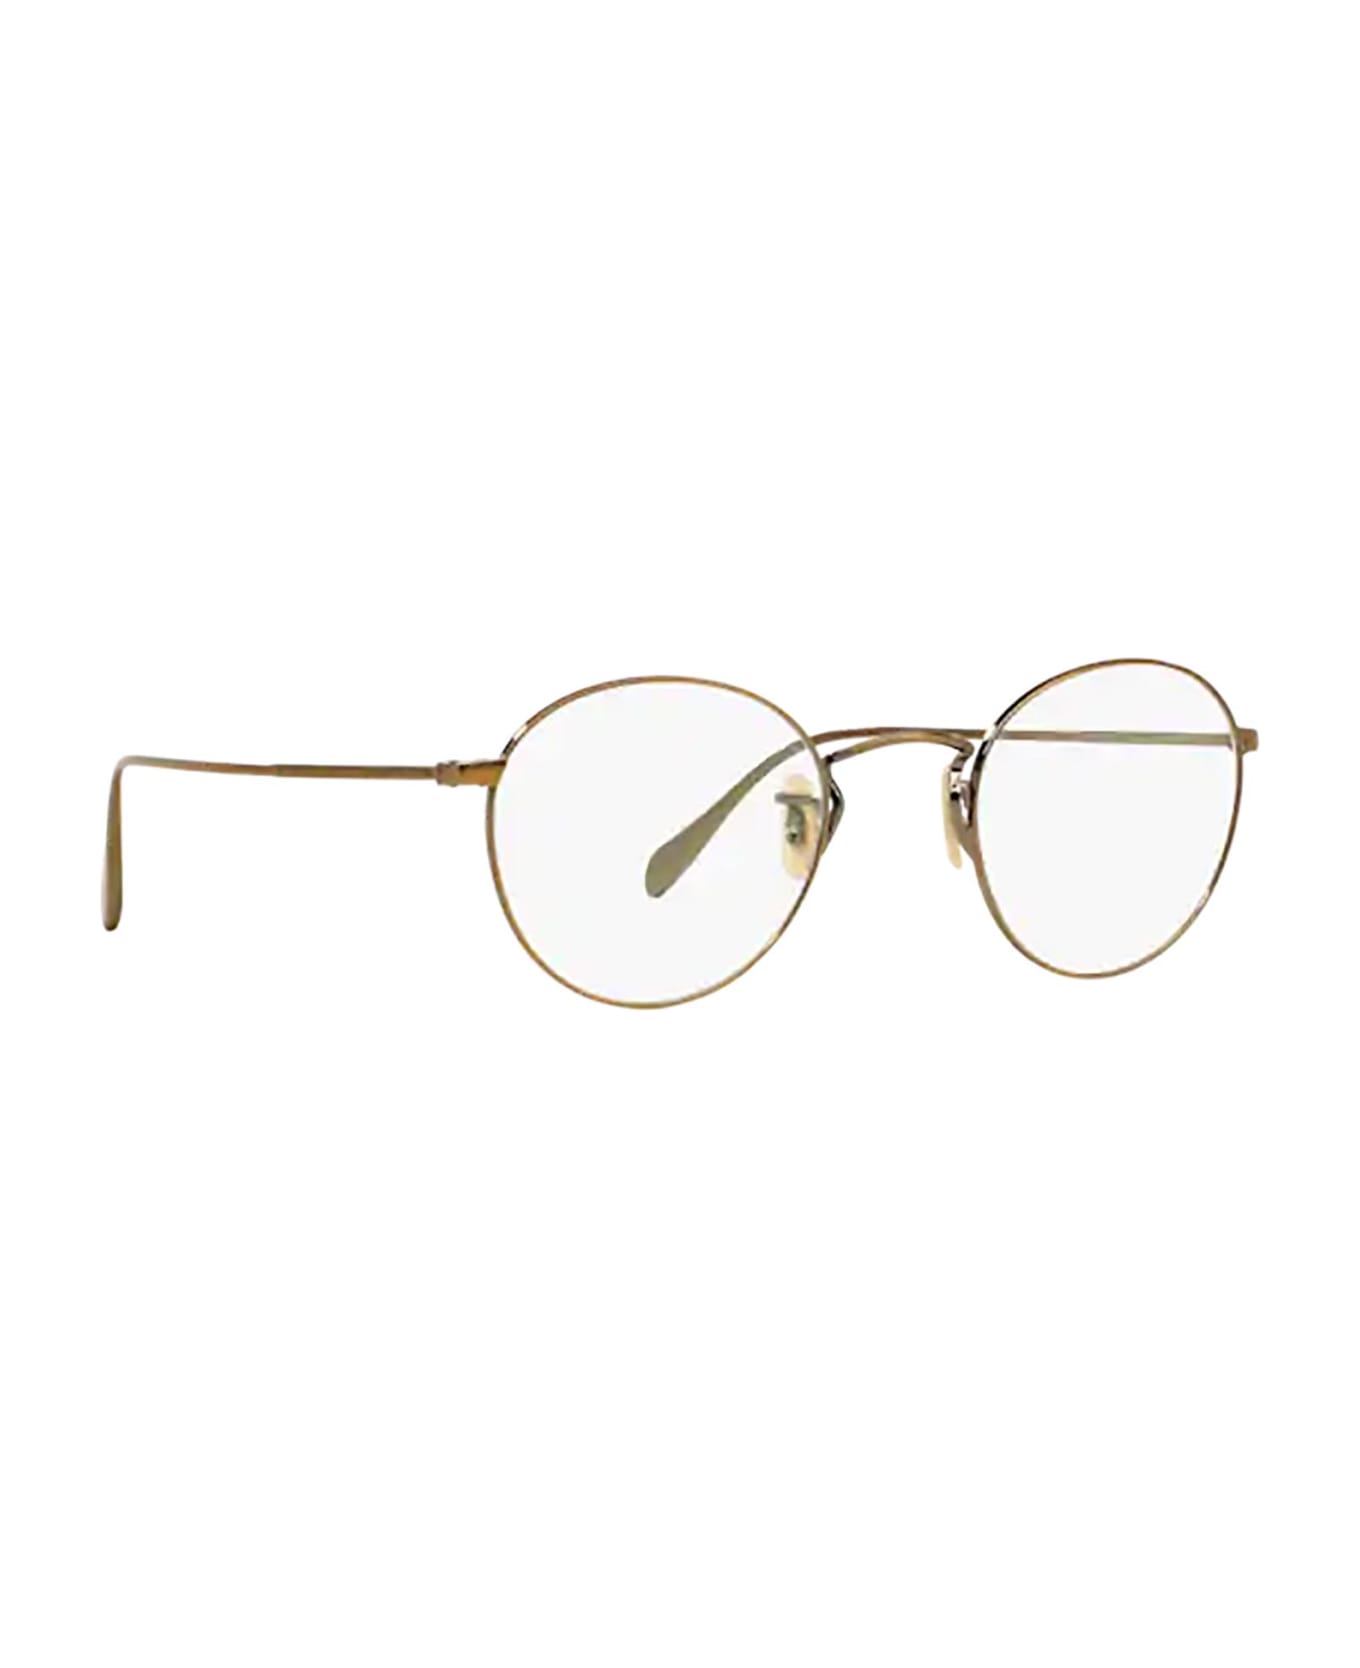 Oliver Peoples Ov1186 Antique Gold Glasses - Antique Gold アイウェア